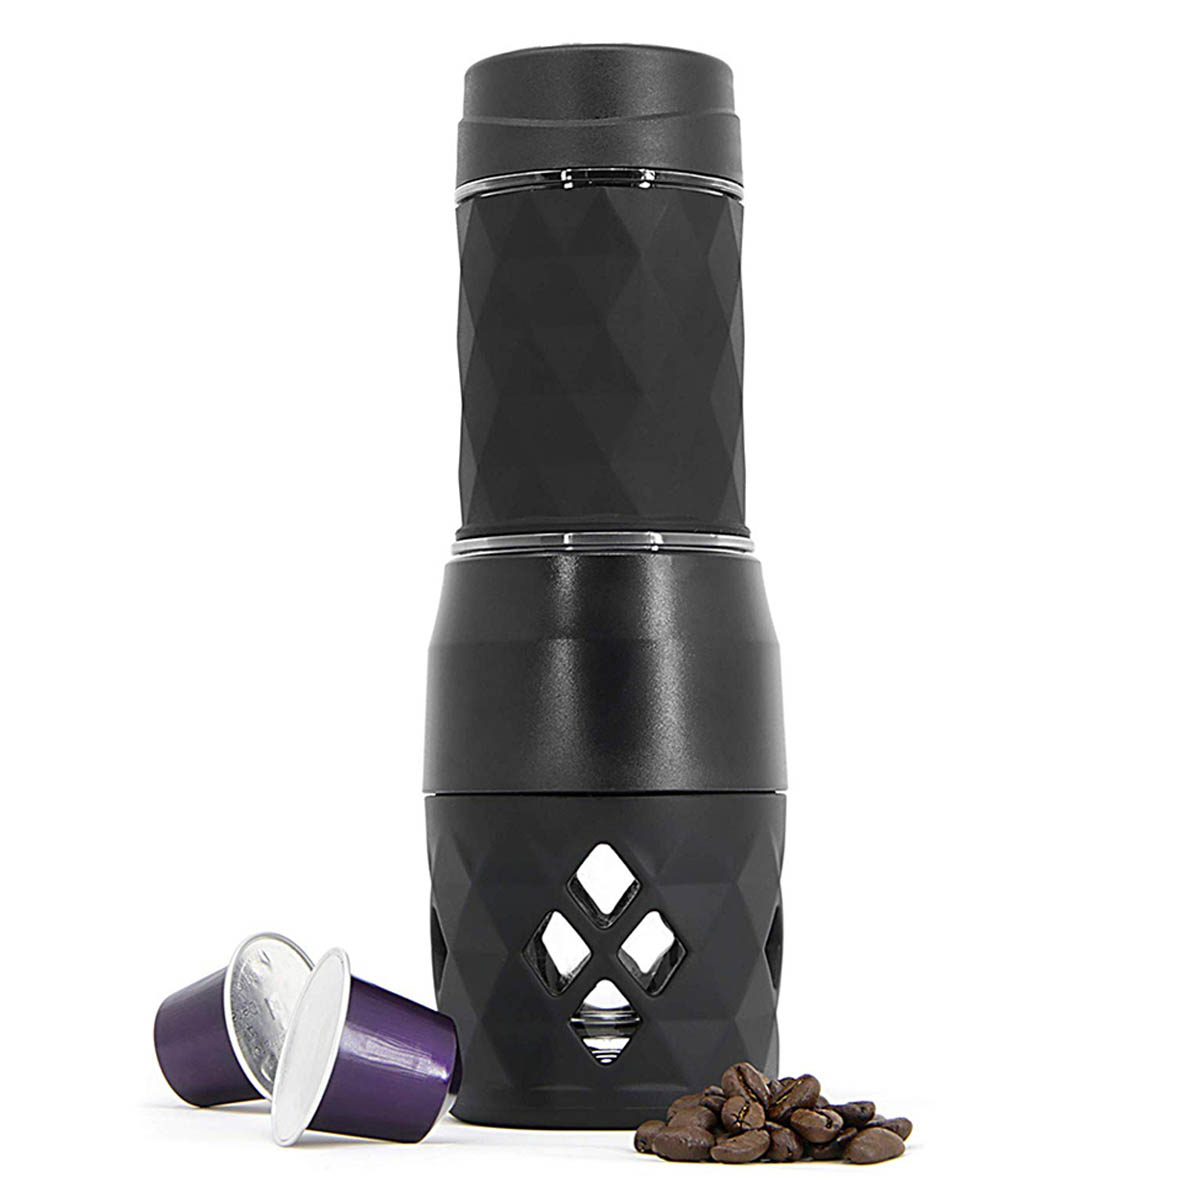 Sogo - Sogo Cafetera Portátil Manual 20Bar -Negro 3 en 1 Compatible con Nespresso, Starbucks y Lavazza